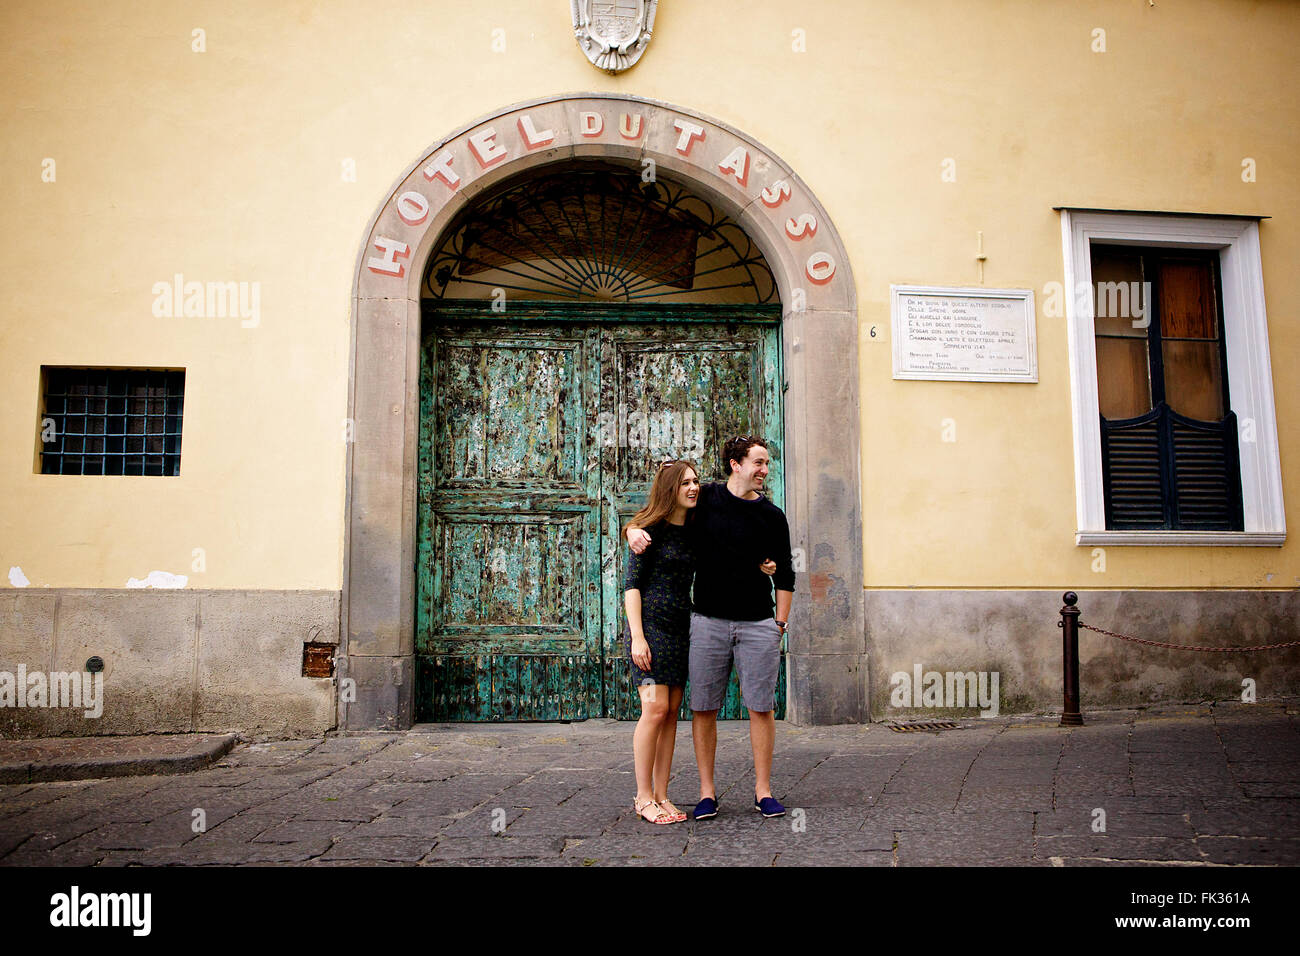 Un jeune couple dans l'amour brunette en face d'un merveilleux, vieux bâtiment italien, méditerranéen, grand portail vert archway Banque D'Images